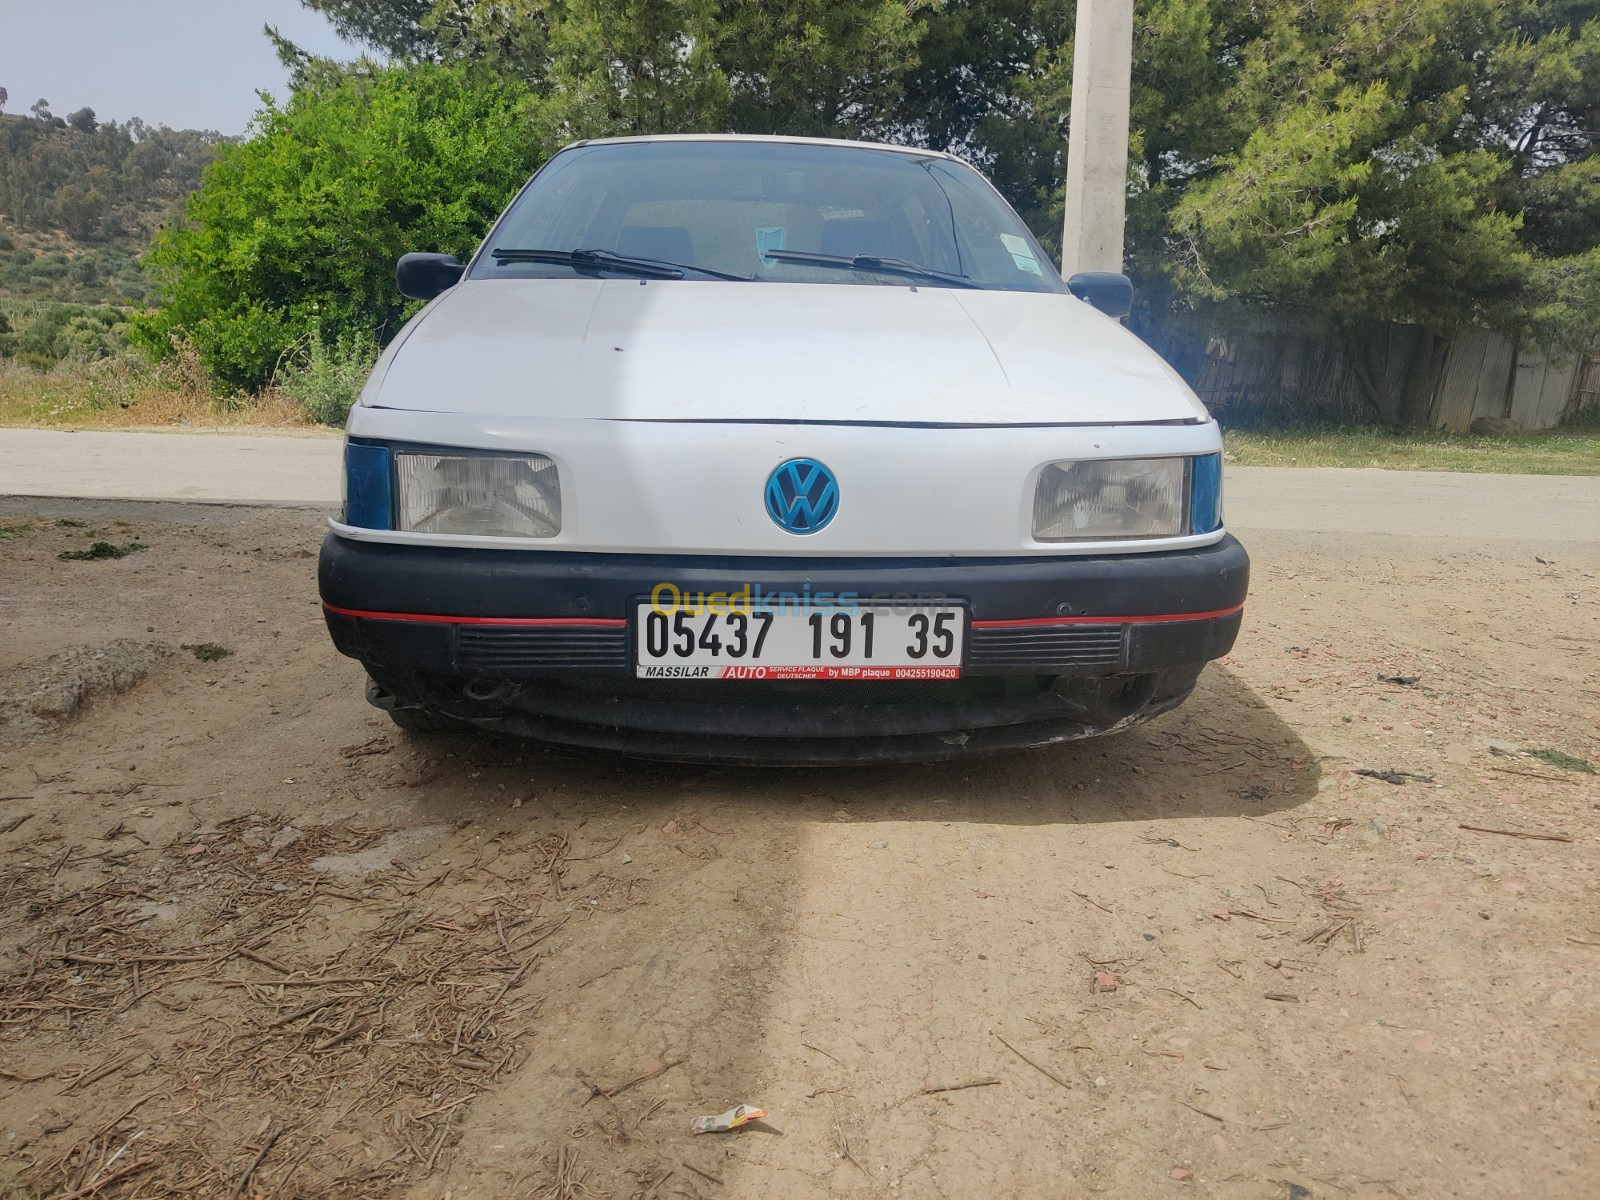 Volkswagen Passat 1991 CL